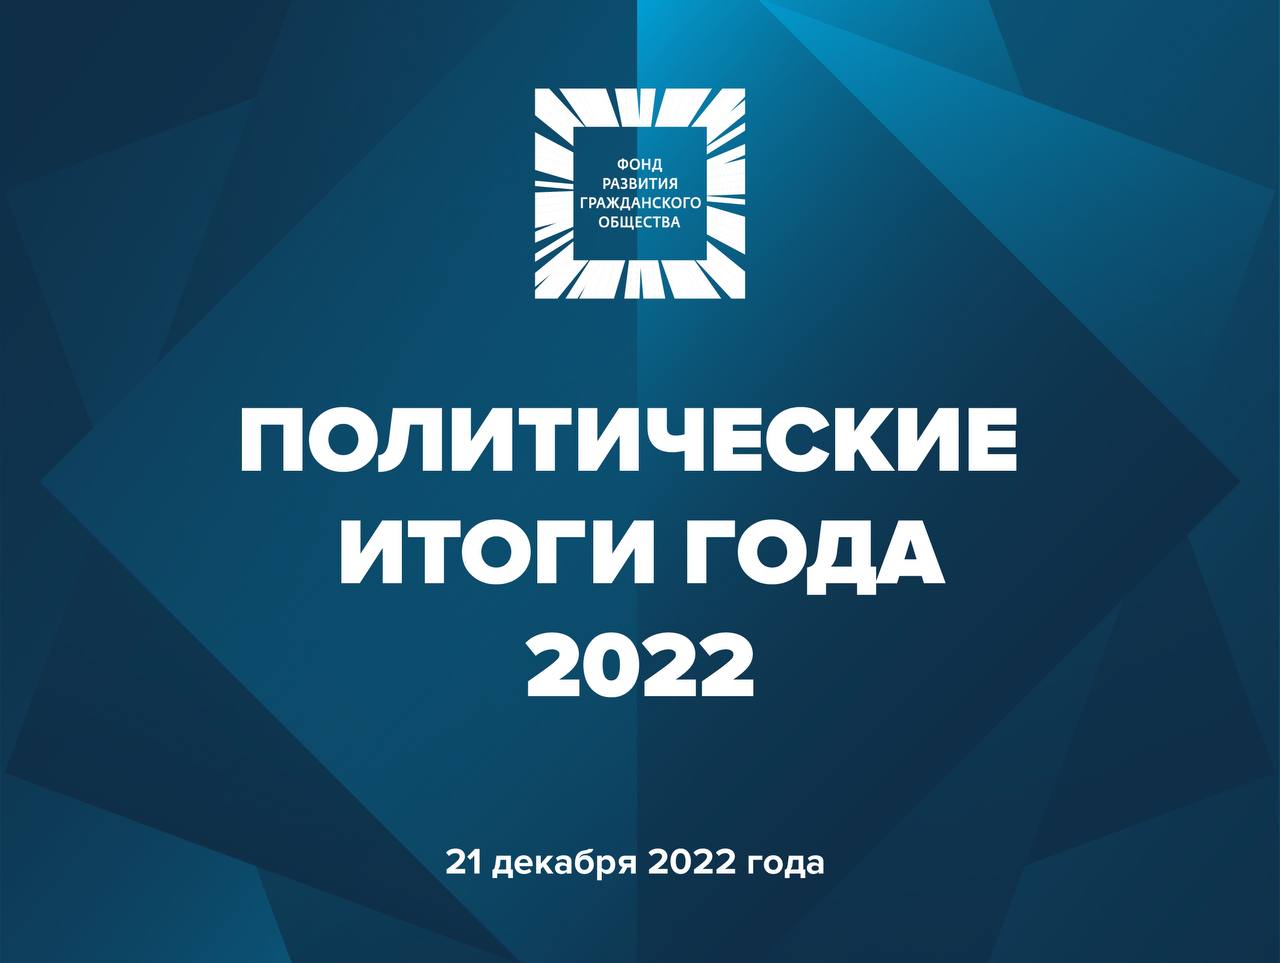 Форго. Фонд развития гражданского общества. Итоги года 2022. Парфенов итоги года 2022.